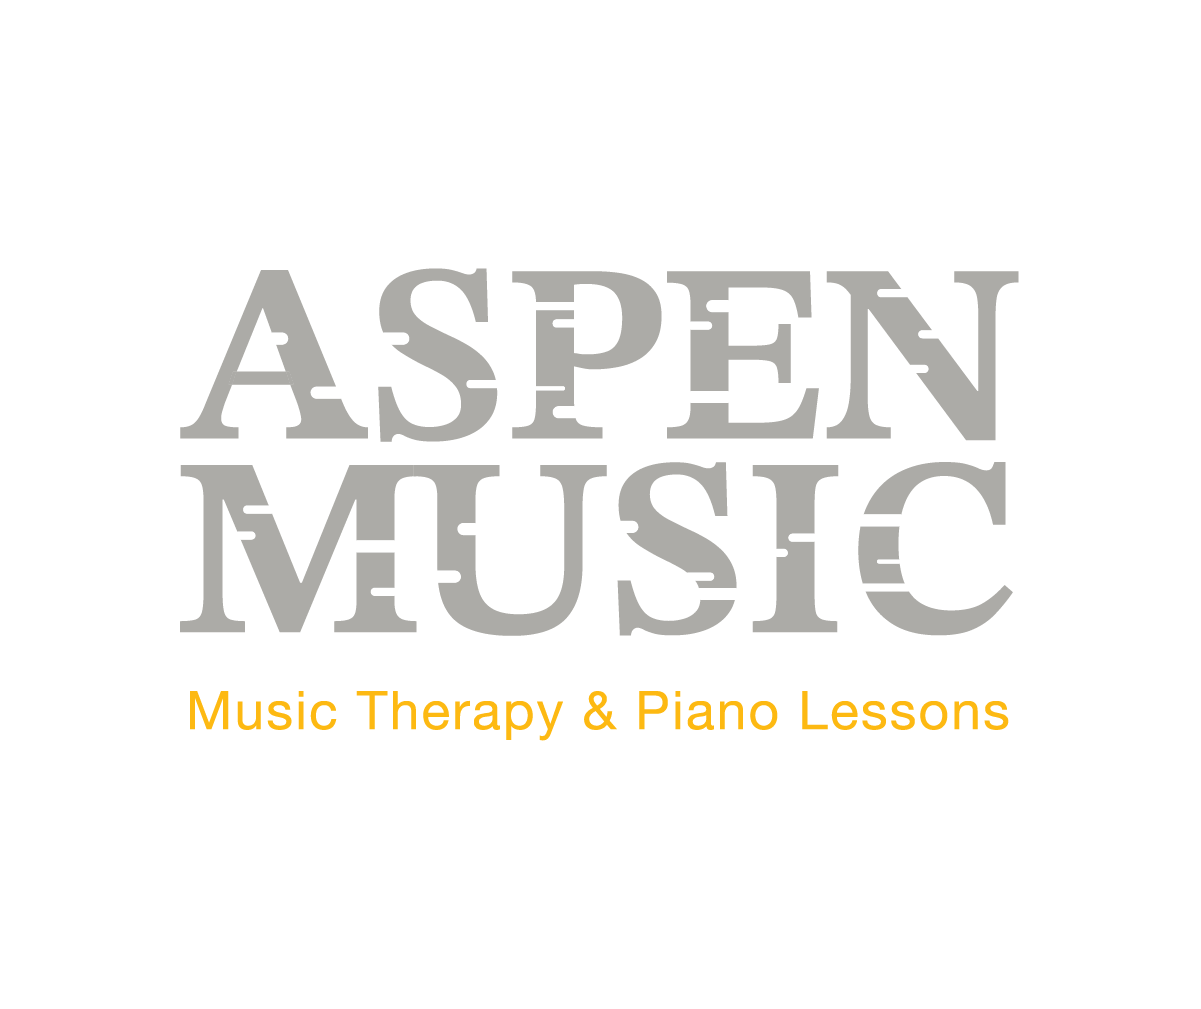 Aspen music